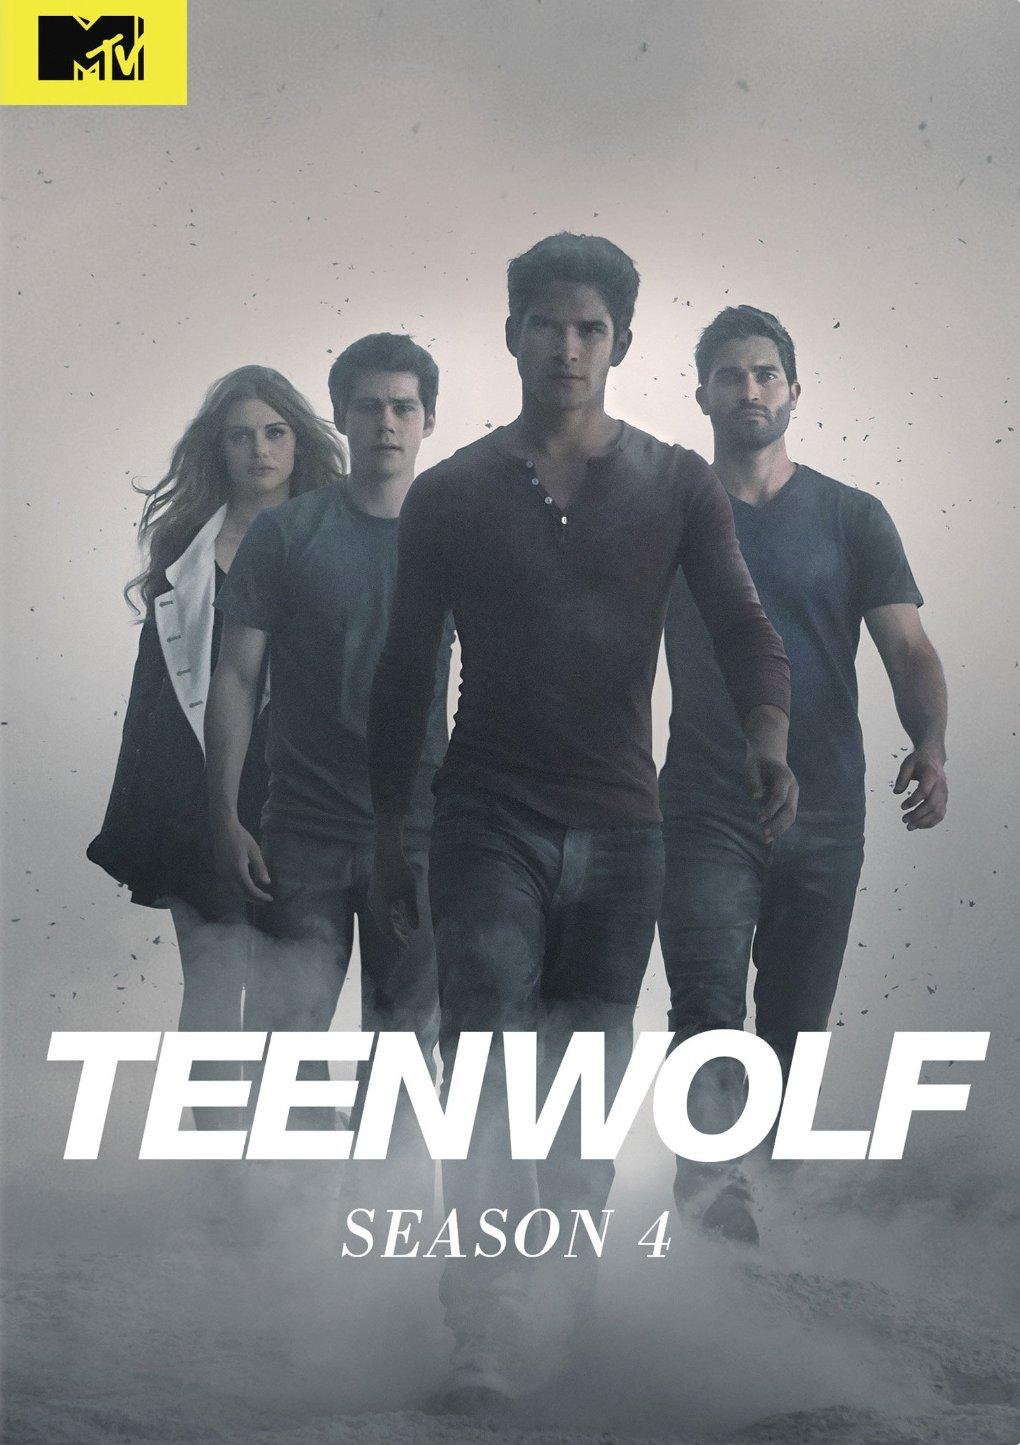 Teen Wolf Season 4 Episode 1 Watch Online In Hd On Putlocker